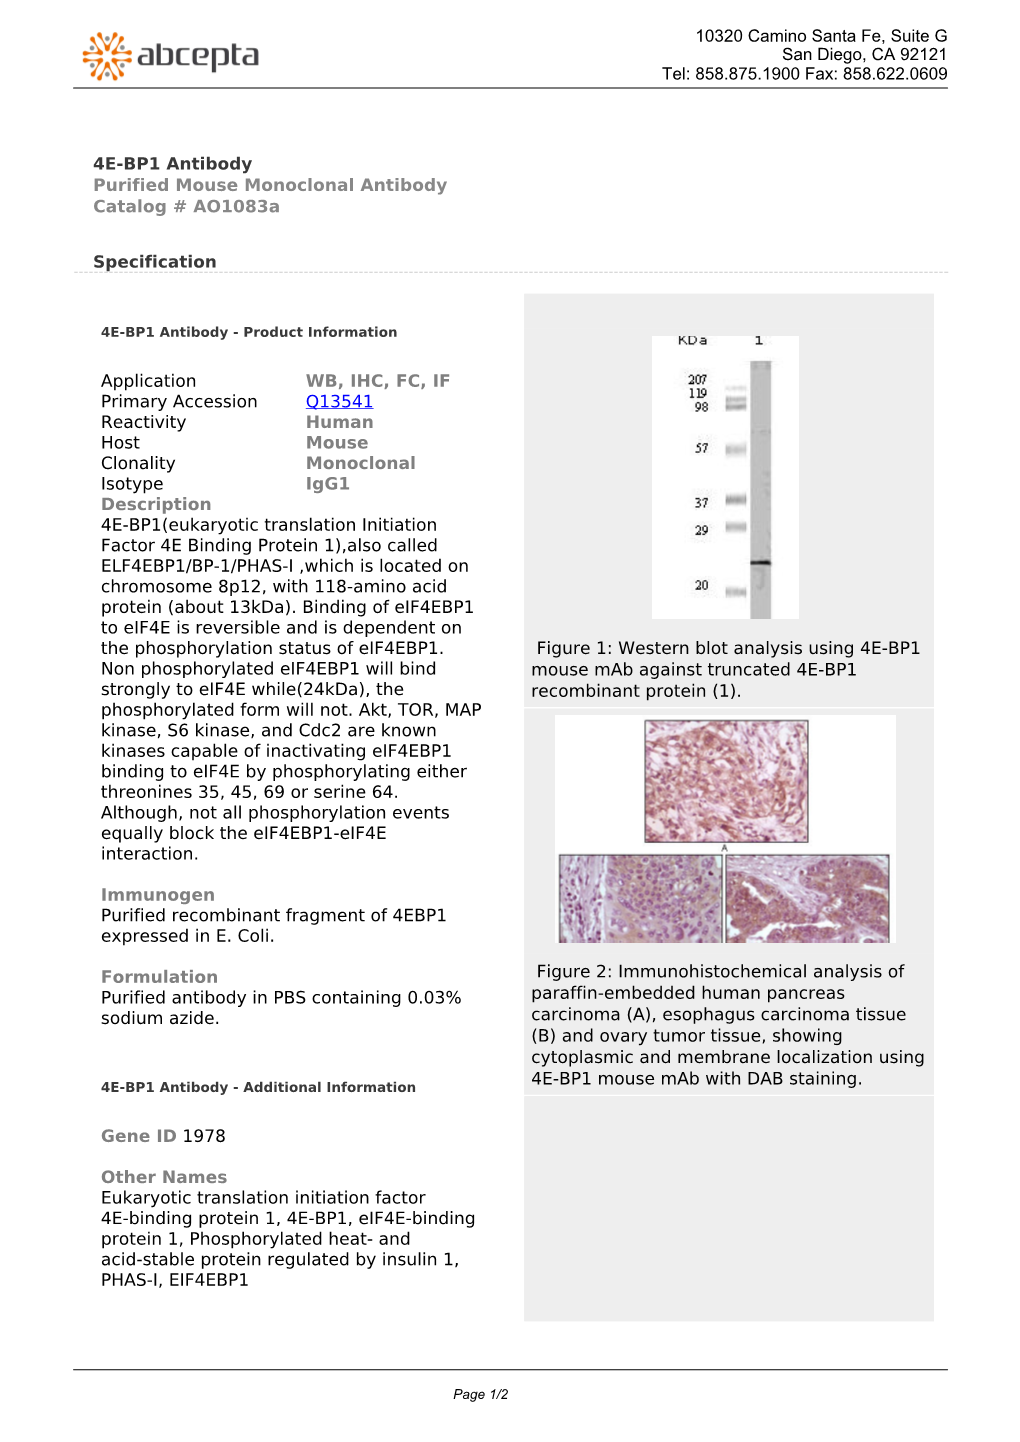 4E-BP1 Antibody Purified Mouse Monoclonal Antibody Catalog # Ao1083a